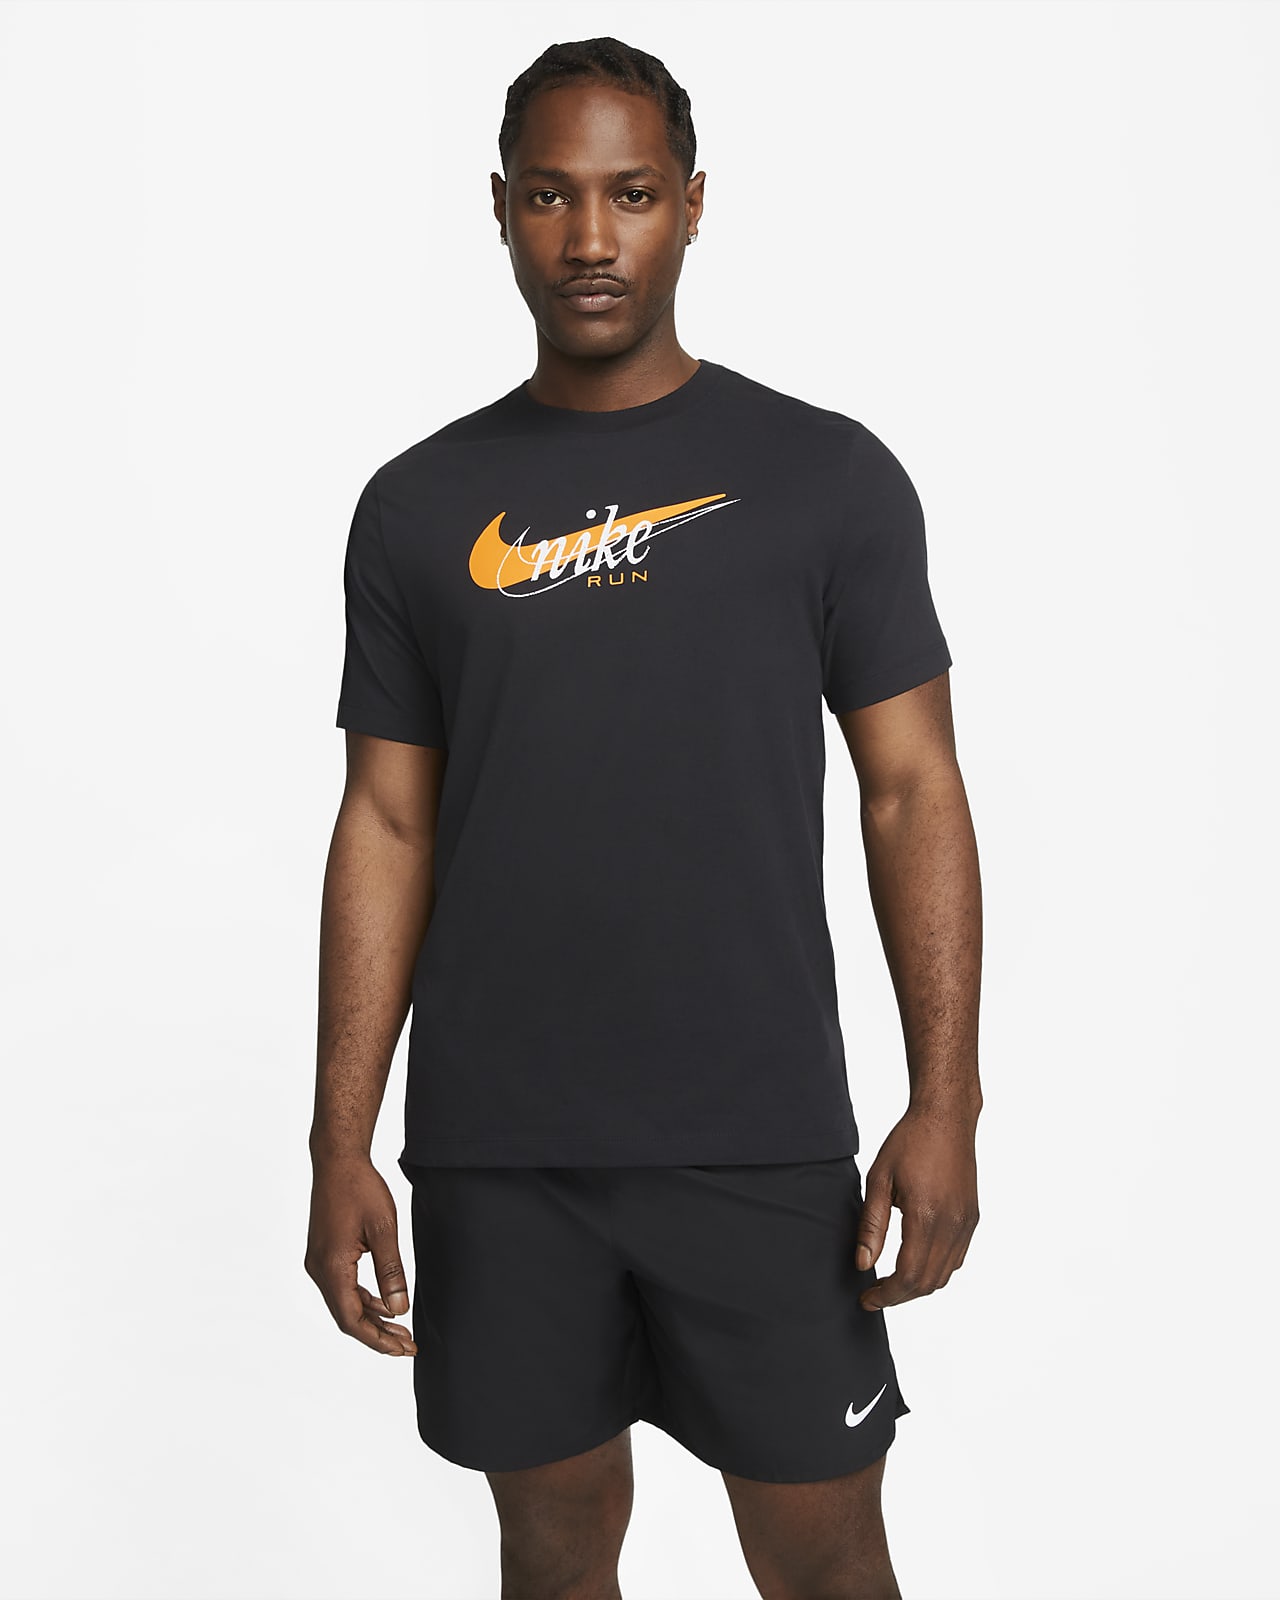 Nike til Nike DK